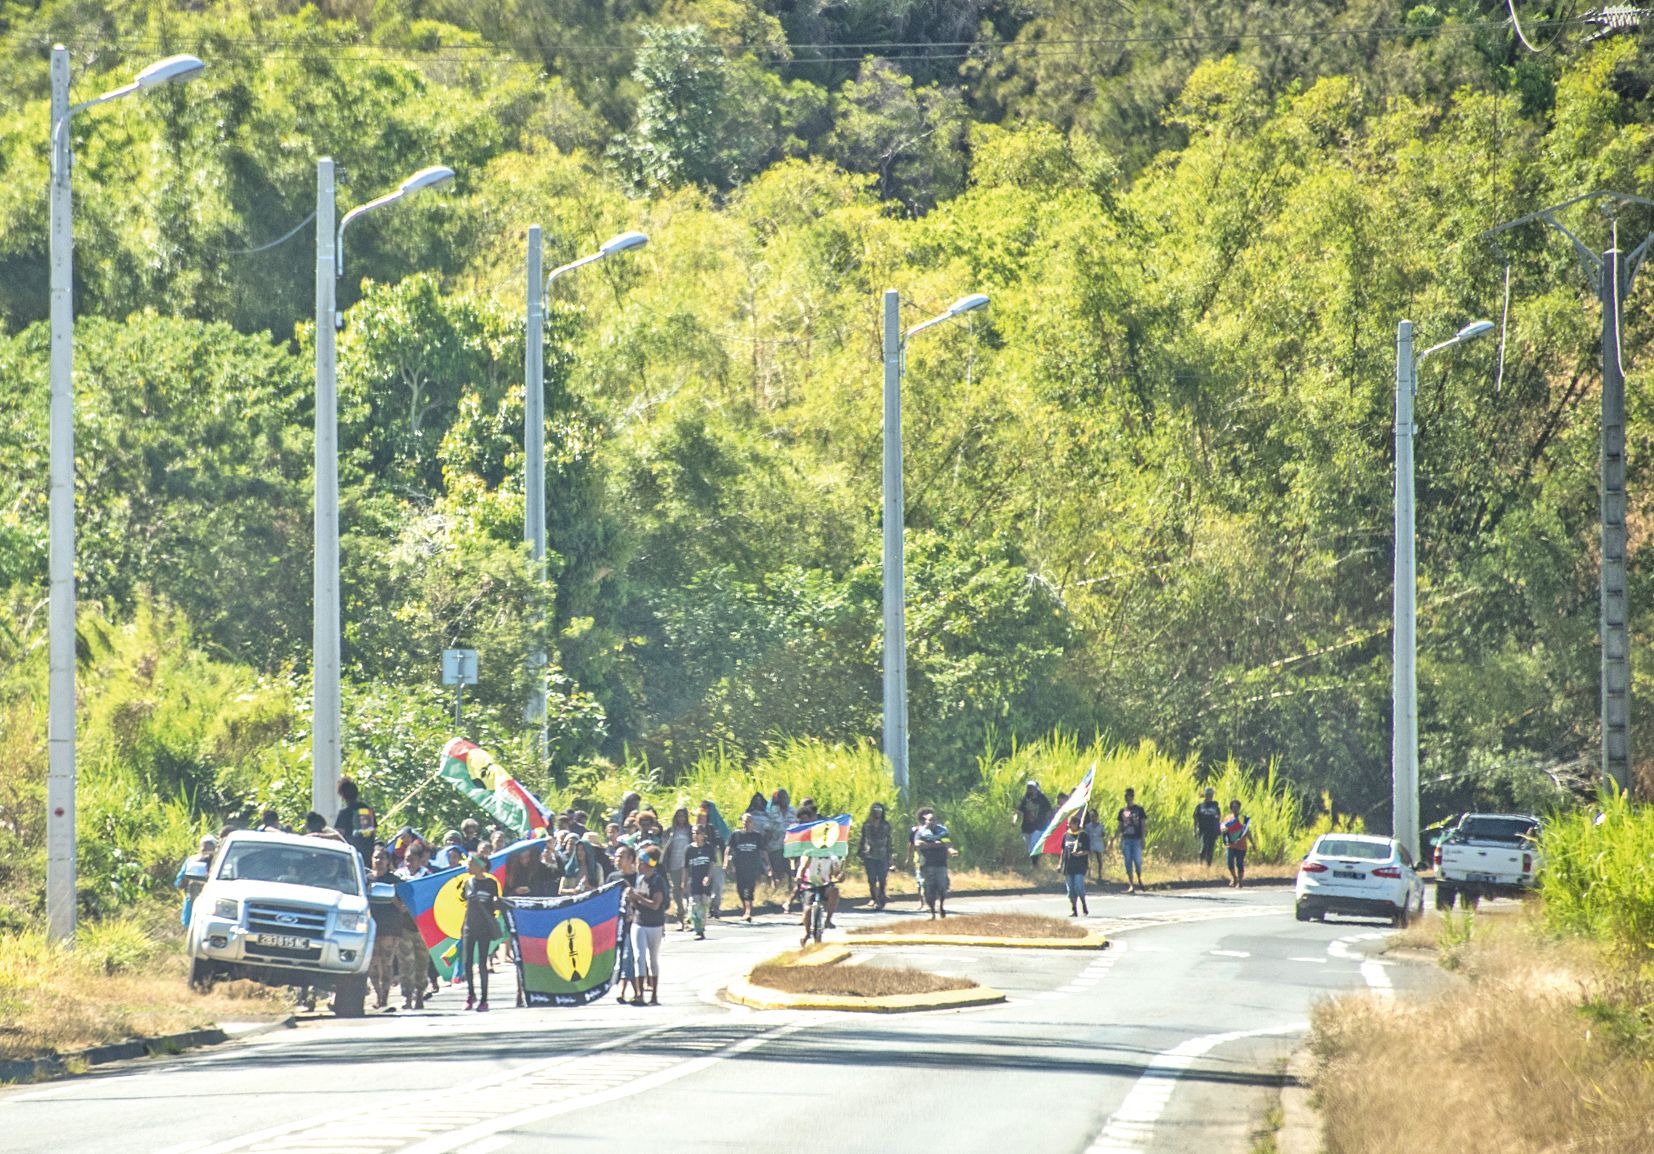 Une cinquantaine de personnes ont participé, dimanche, à une marche « pacifique » sur la RP1 en souvenir de William  Decoiré, tué par un tir de gendarme il y a un an. Quelques heures plus tard, des actes de violences ont éclaté sur la route.